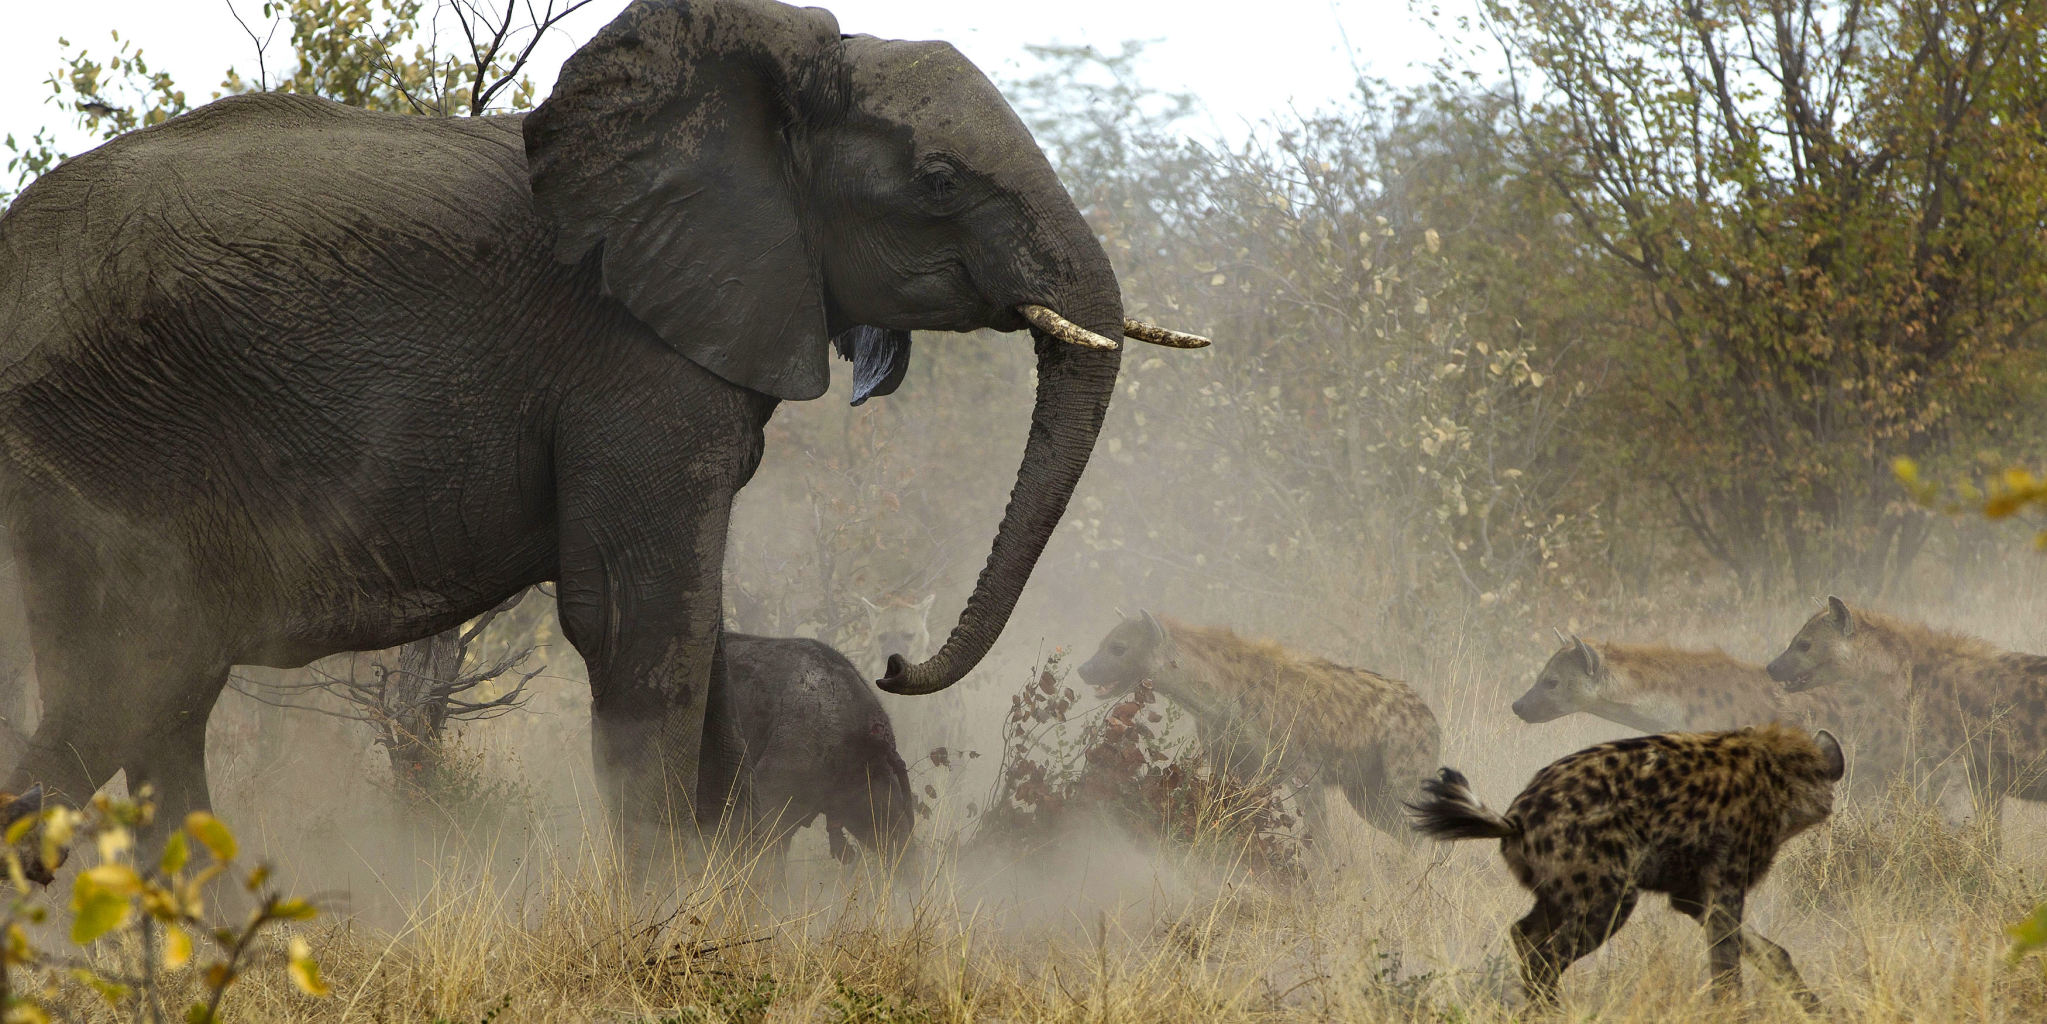 تصاویری نادر از دفاع فیل از فرزندش در مقابل کفتار ها.جندی شاپور البرز